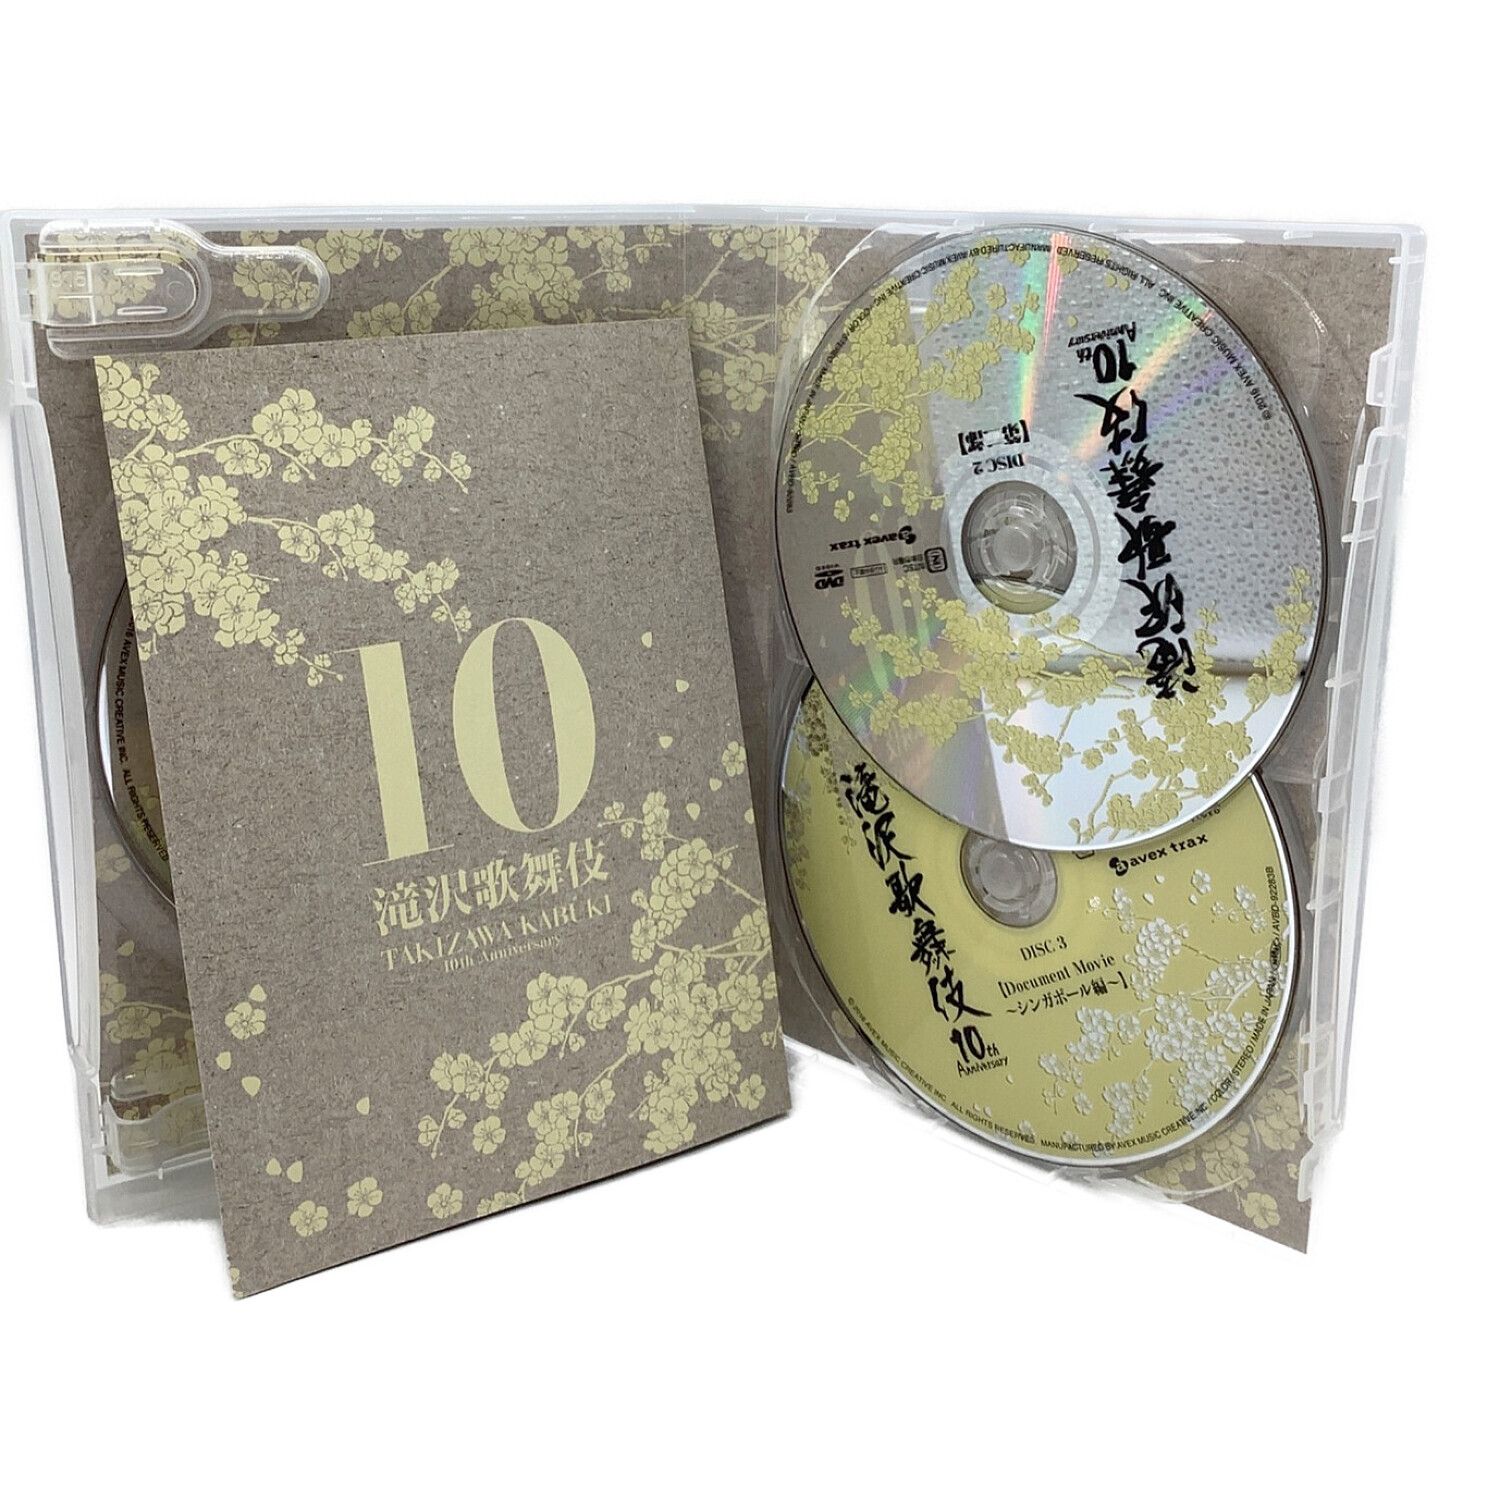 滝沢歌舞伎10th Anniversary DVD | nate-hospital.com